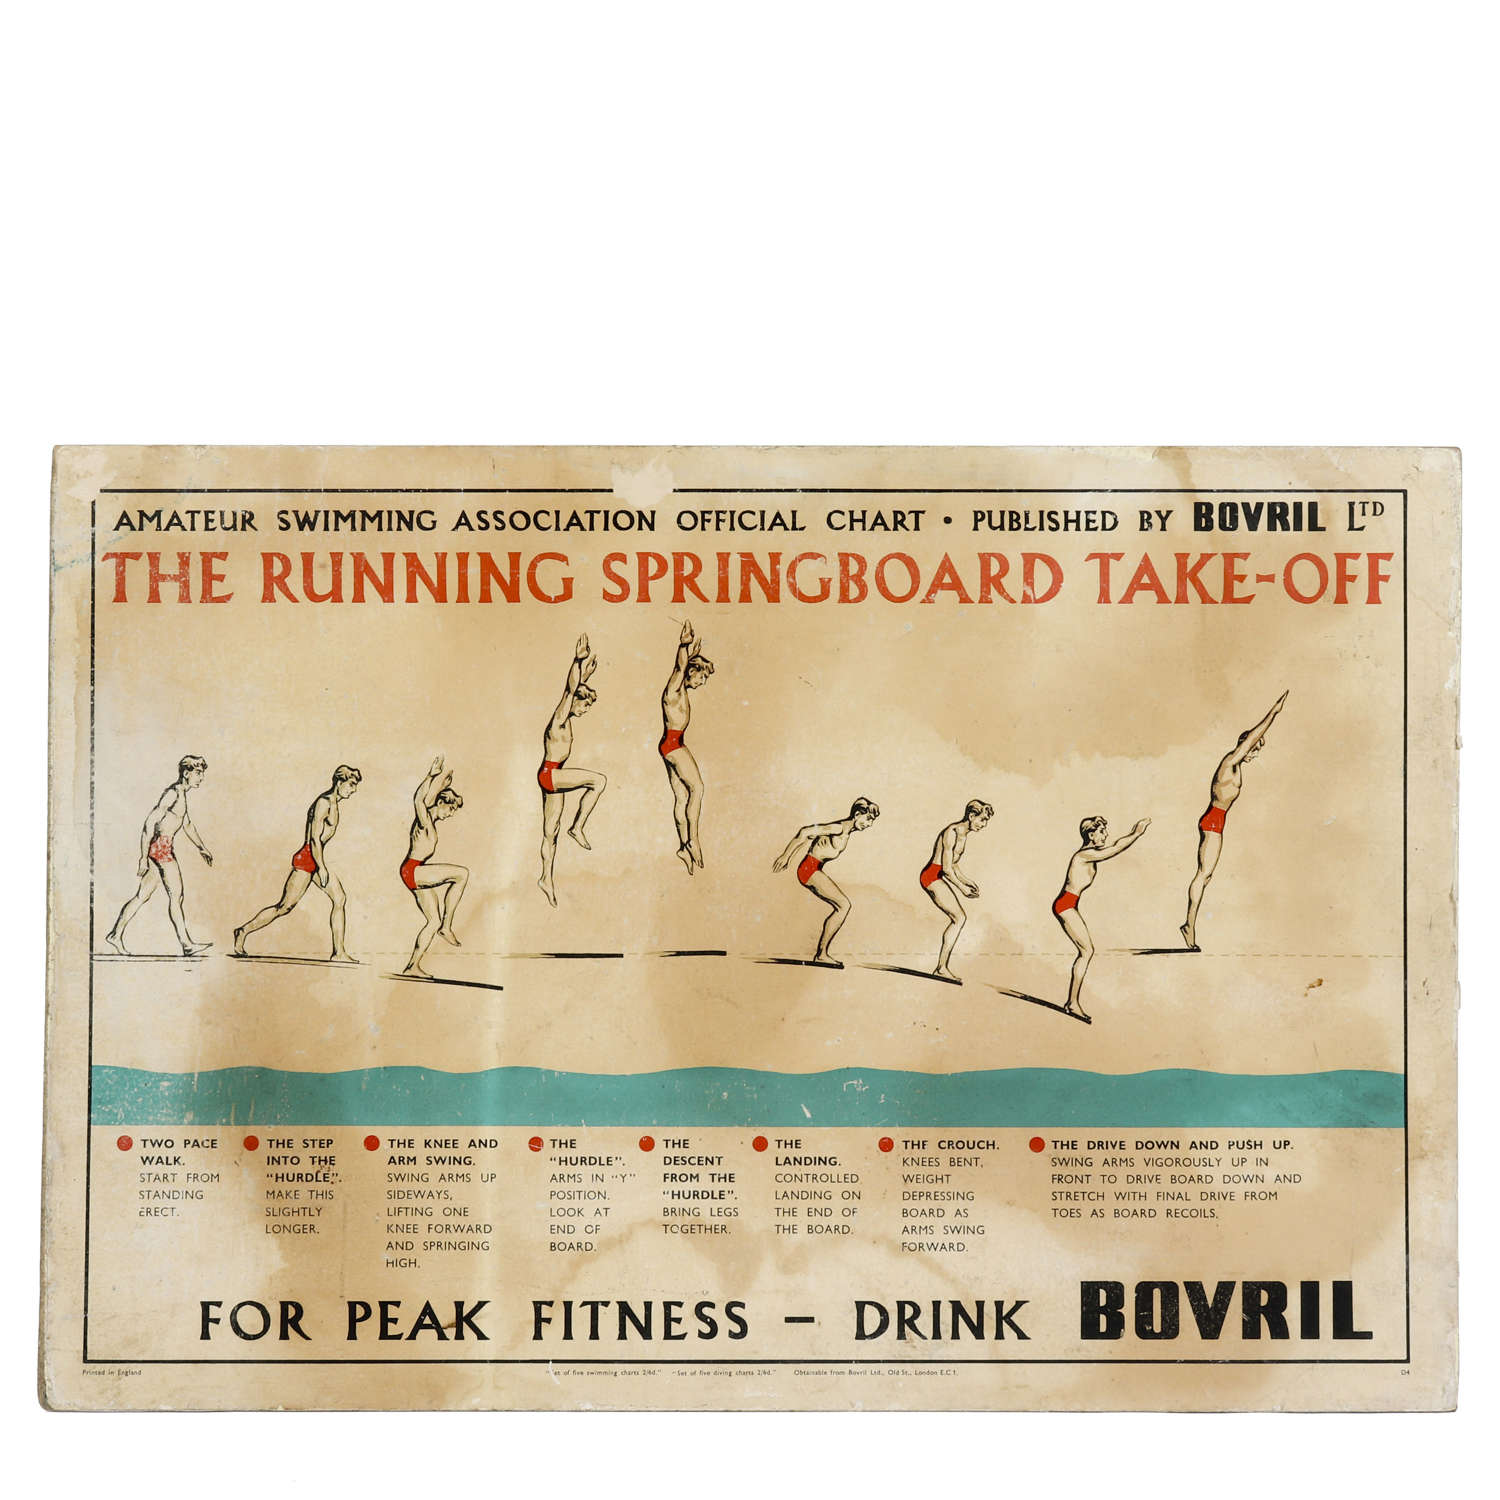 Original vintage Bovril advertising sign